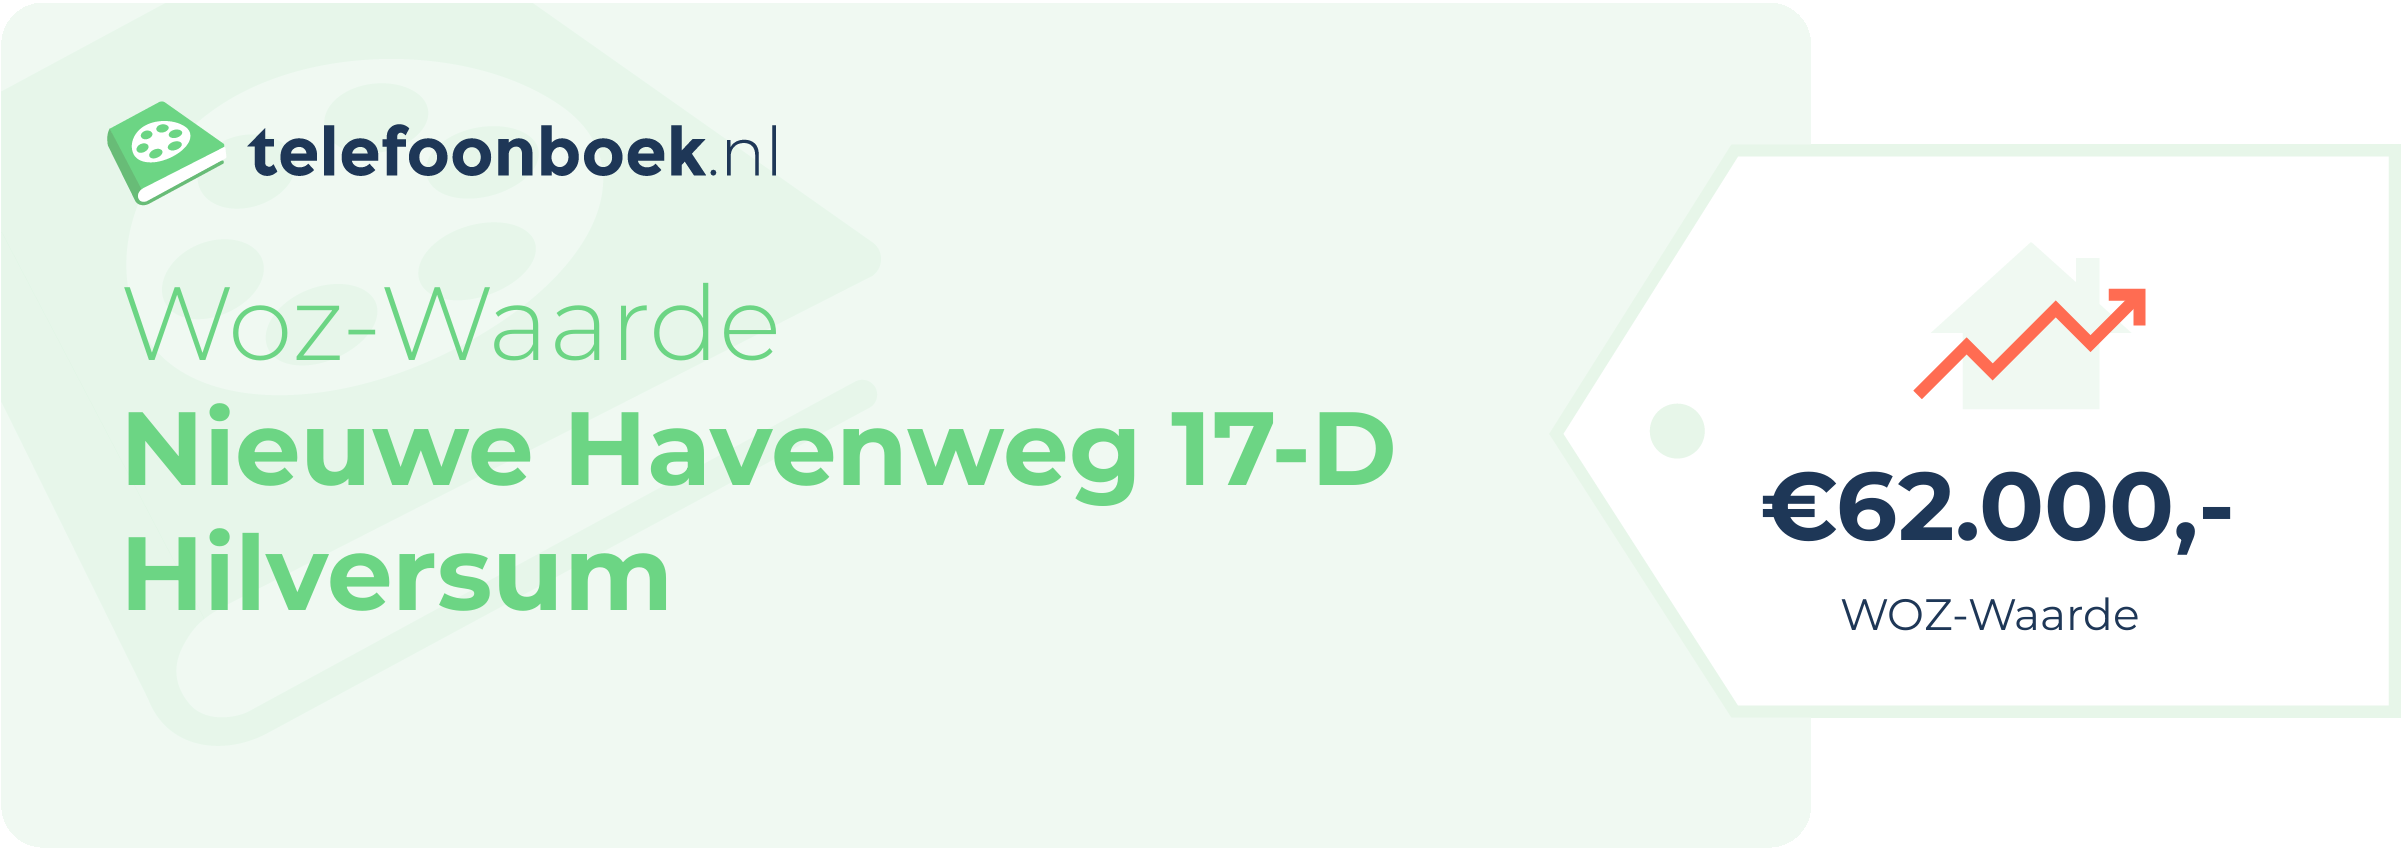 WOZ-waarde Nieuwe Havenweg 17-D Hilversum